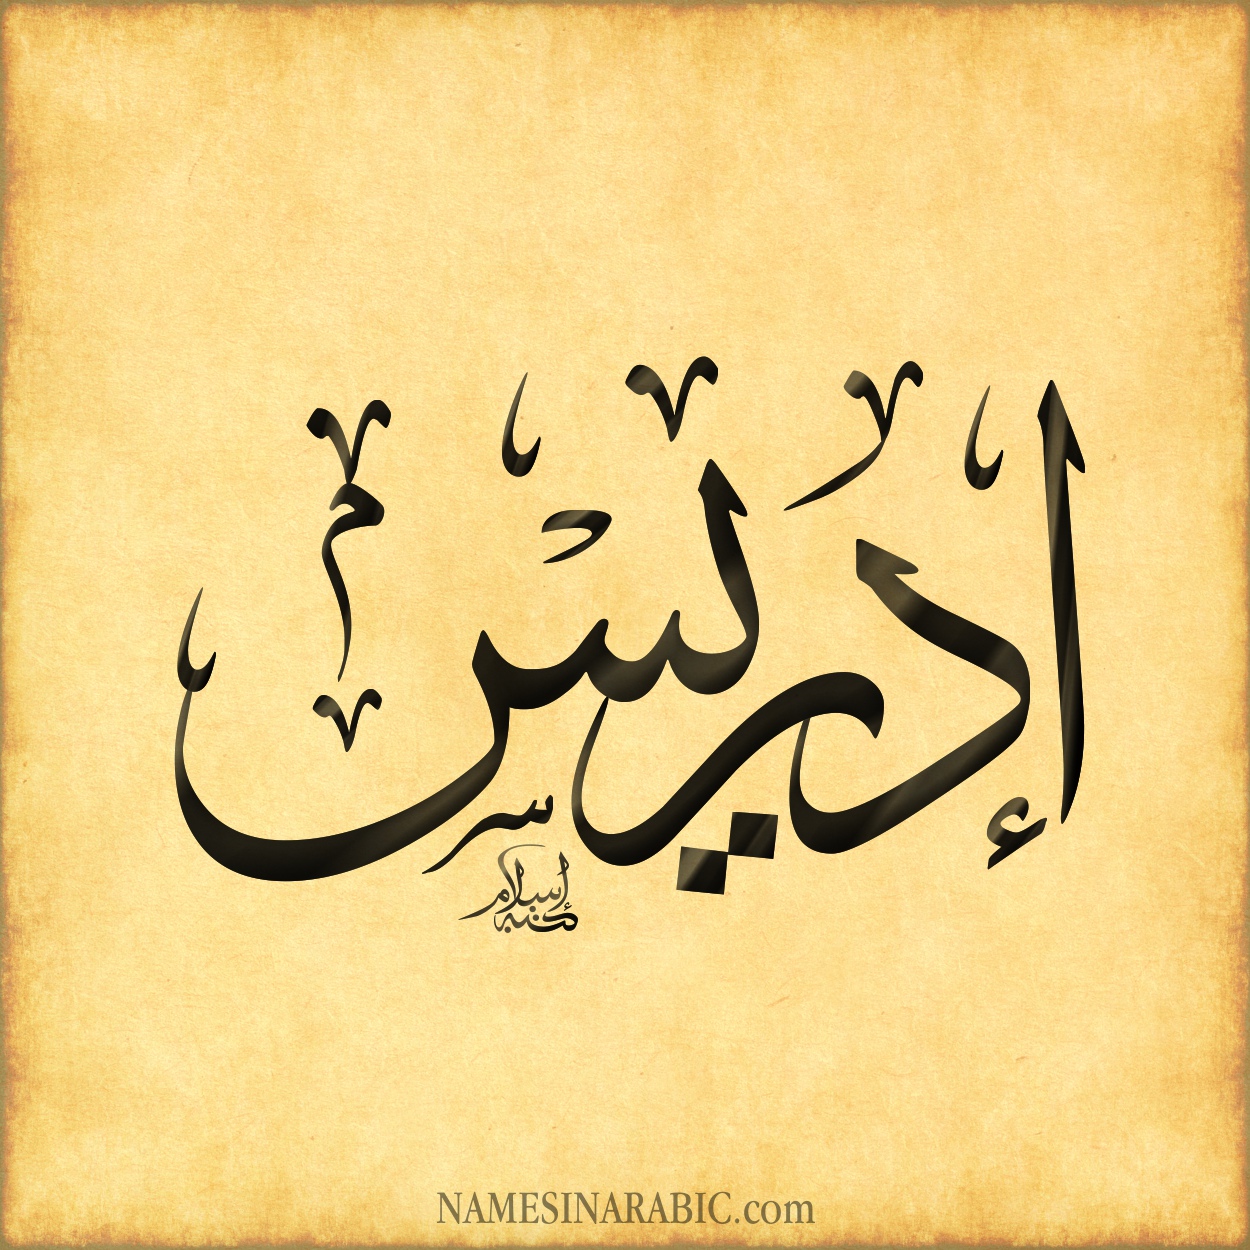 Арабский язык поздравления. Идрис на арабском. Ахмед на арабском языке. Салим на арабском языке. Пожелания на арабском.